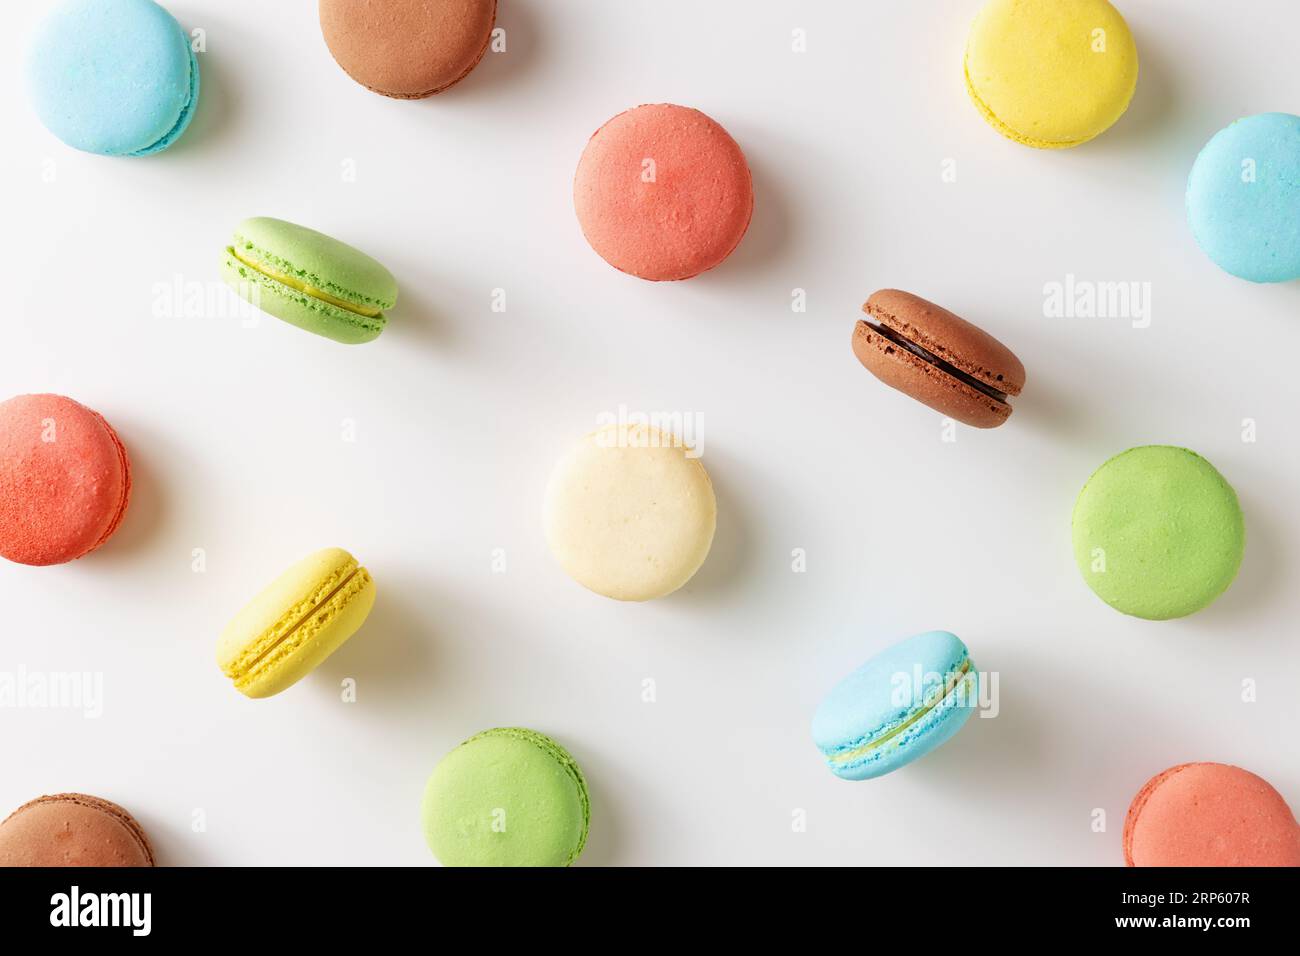 Dolci biscotti francesi colorati con macaron con diversi ripieni su sfondo bianco. Foto Stock